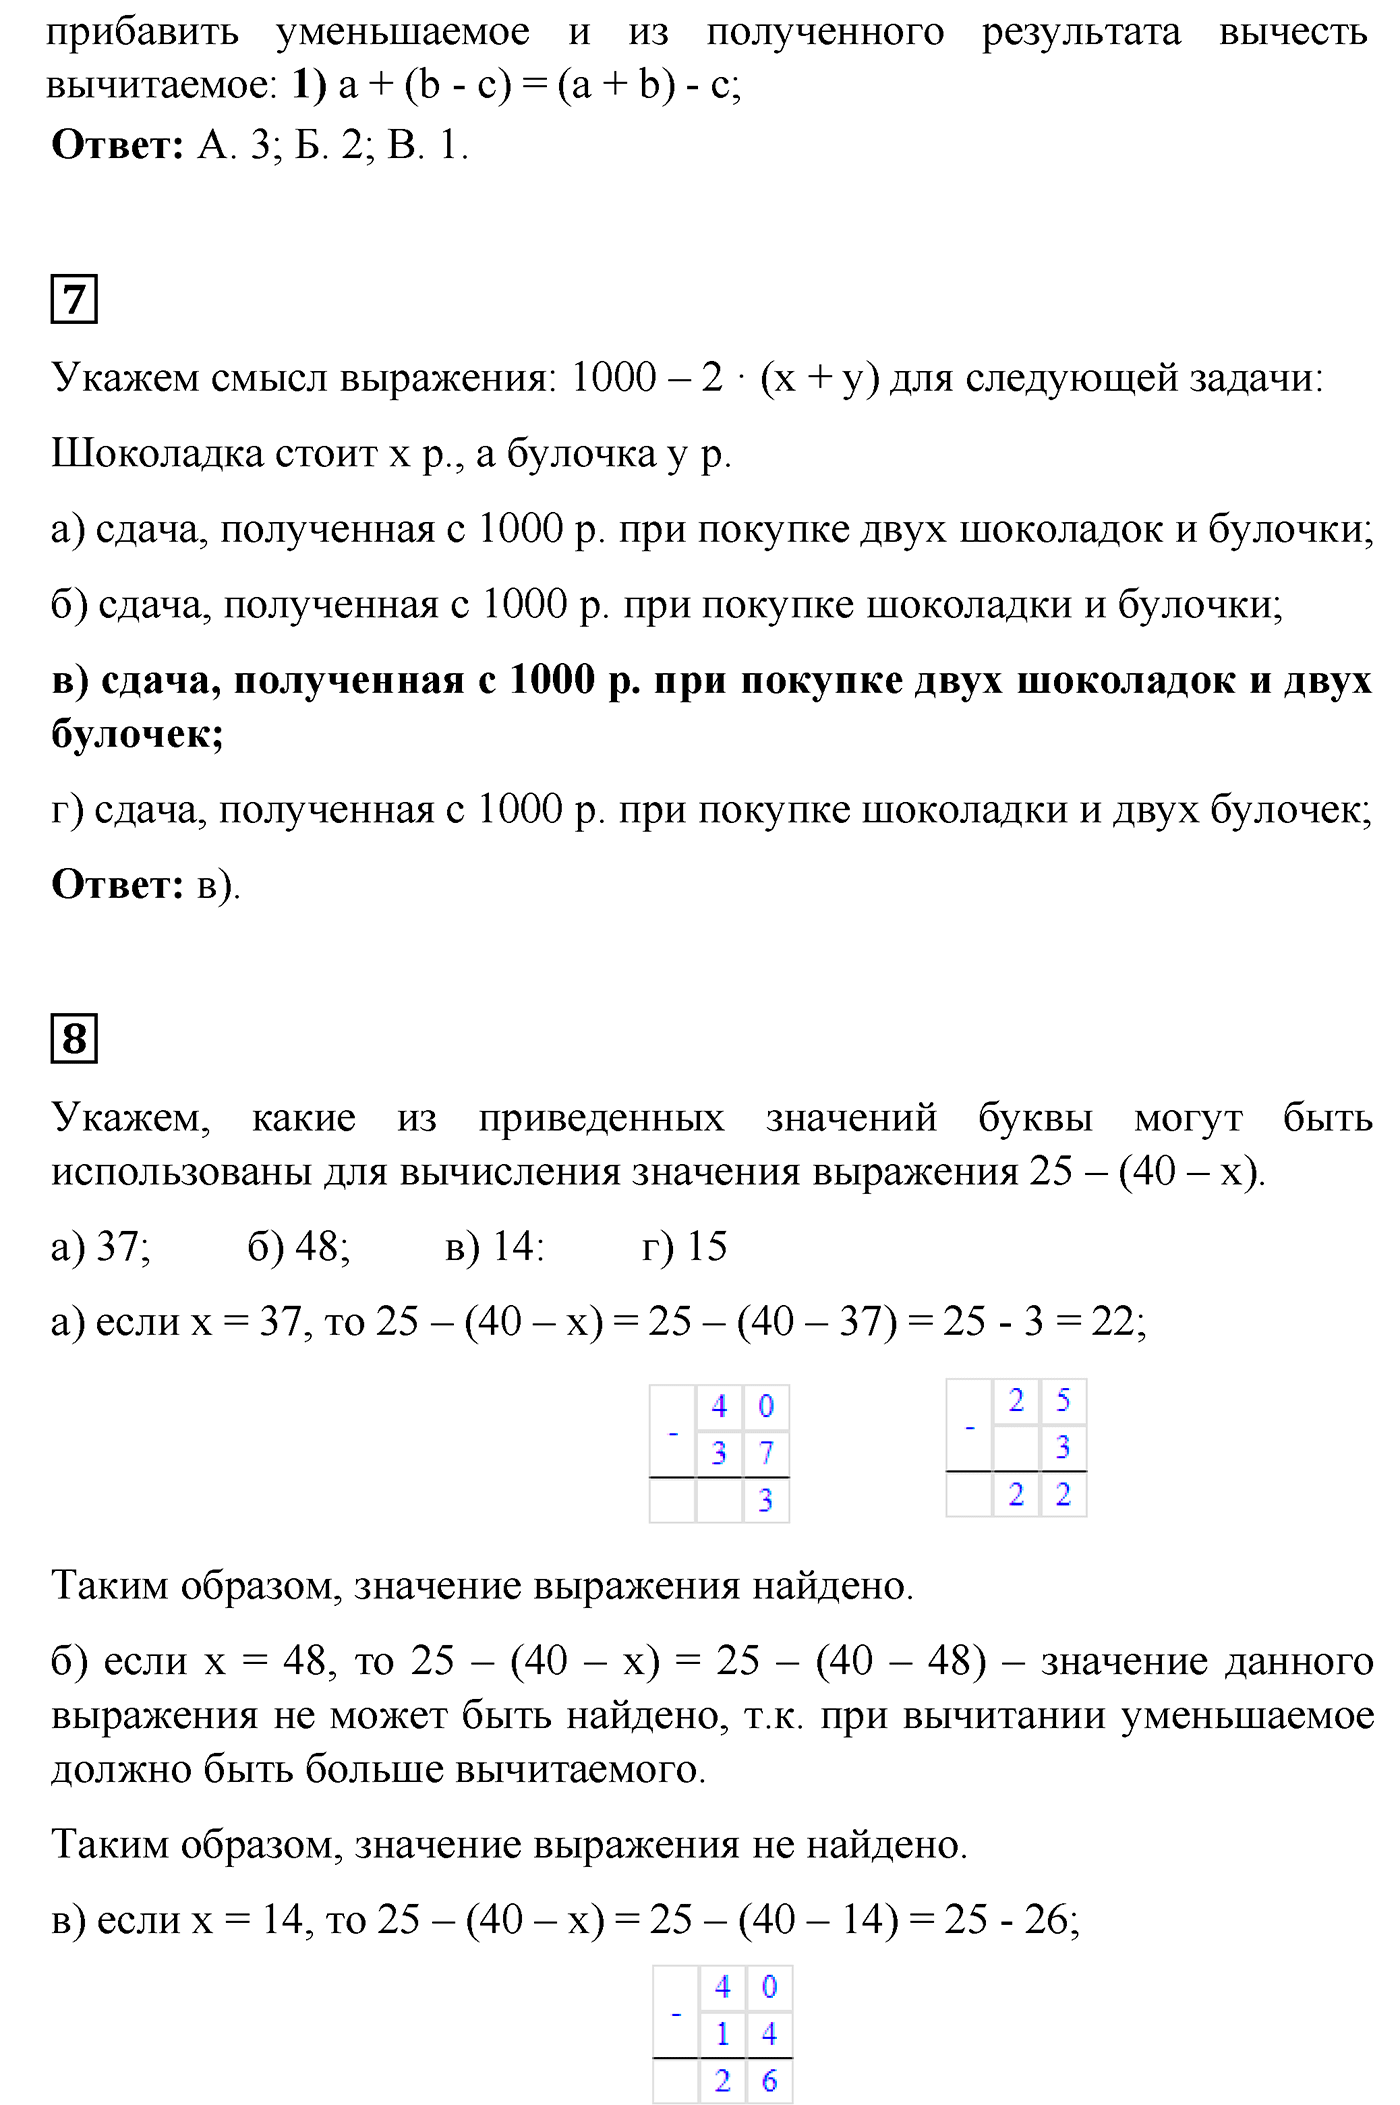 страница 79 задания для самопроверки математика 5 класс Виленкин 2022 часть 1